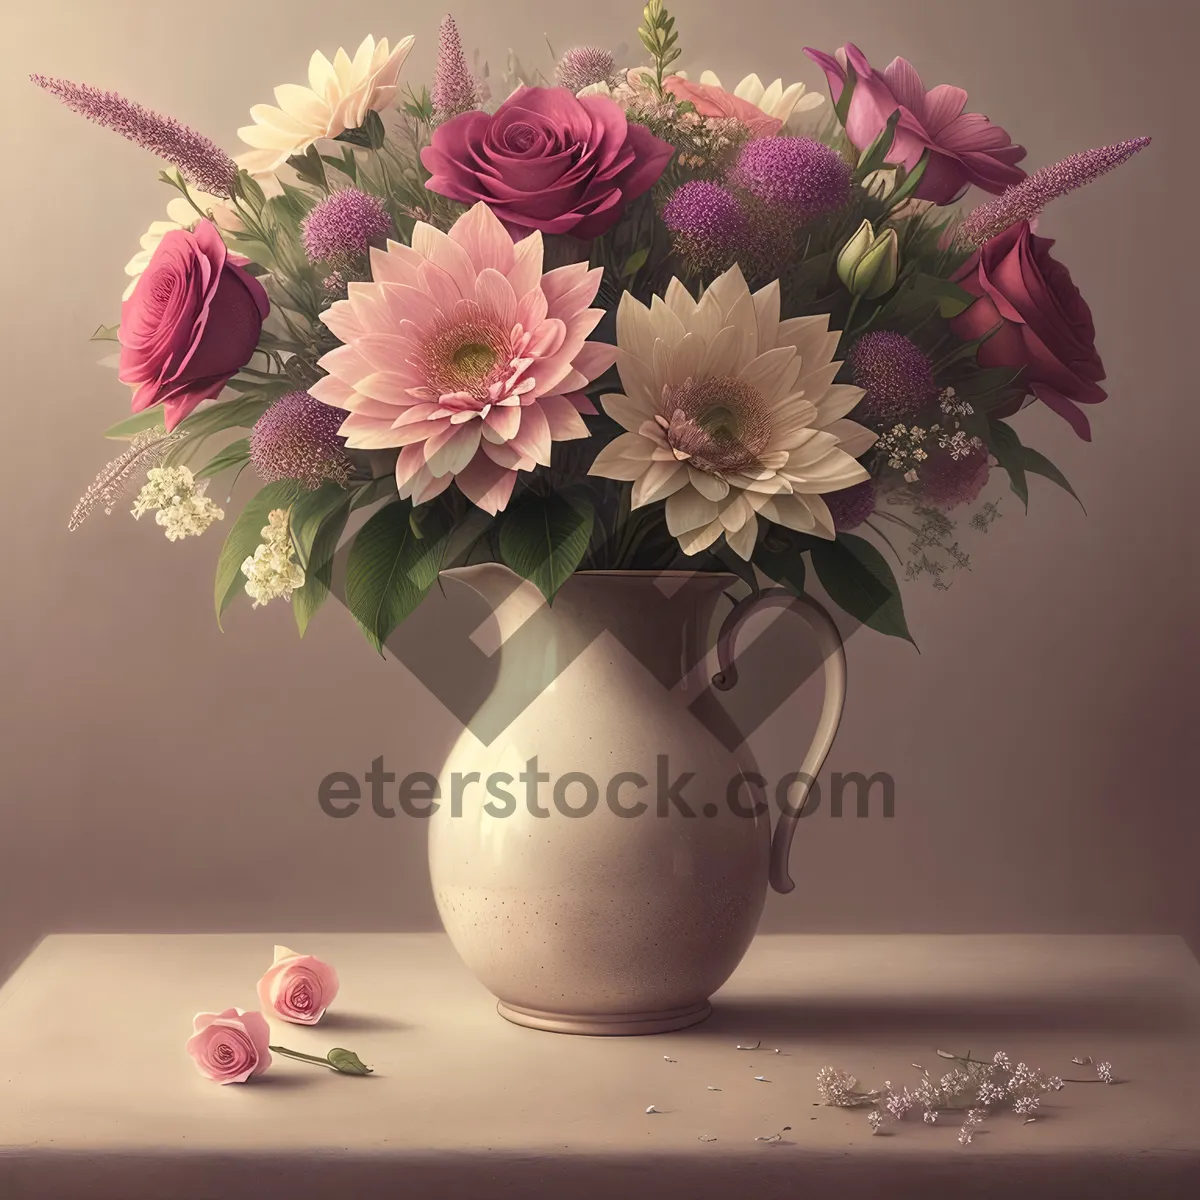 Picture of Romantic Spring Floral Vase Bouquet